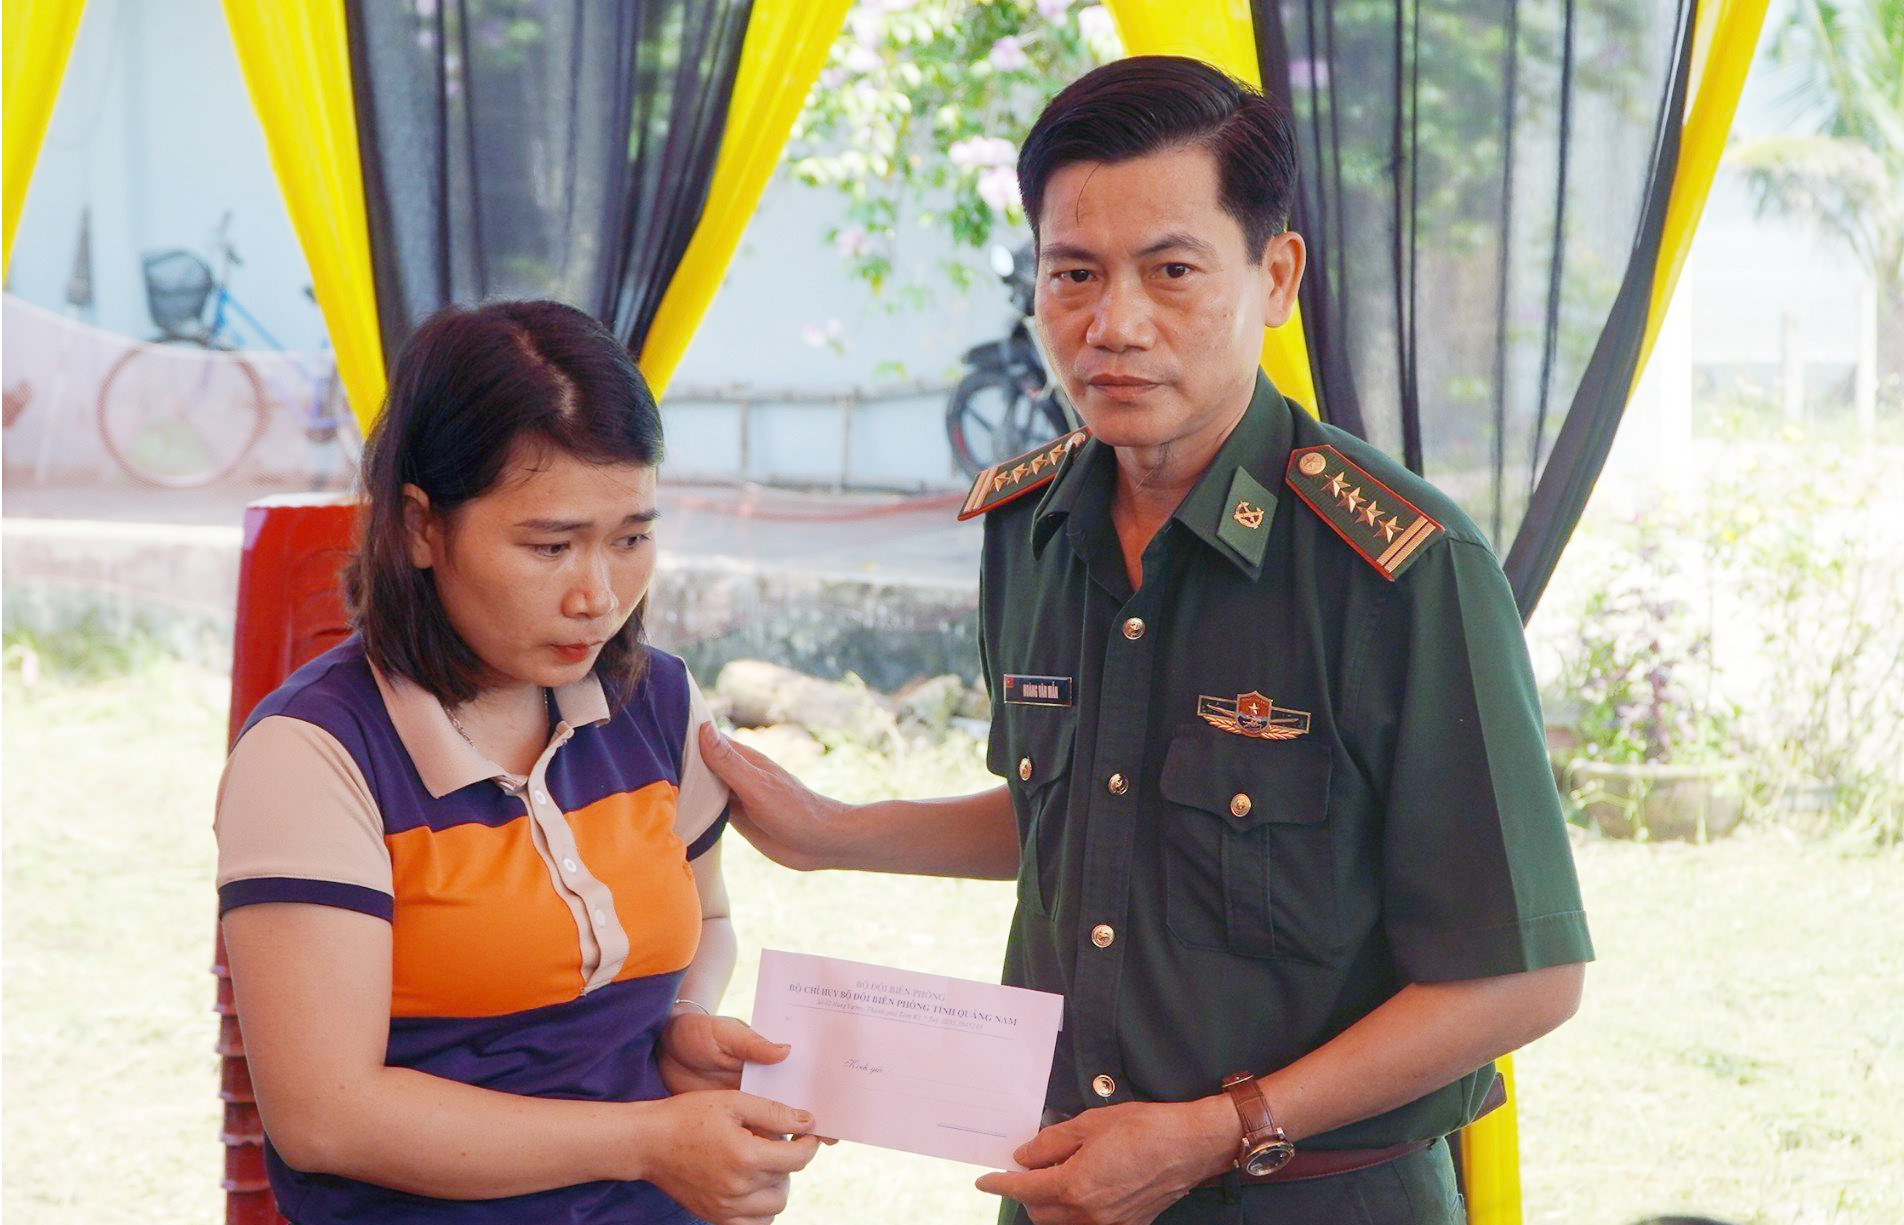 Đại tá Hoàng Văn Mẫn - Chính ủy BĐBP tỉnh trao hỗ trợ cho gia đình ngư dân Lương Hùng Vương. Ảnh: THÁI TÙNG